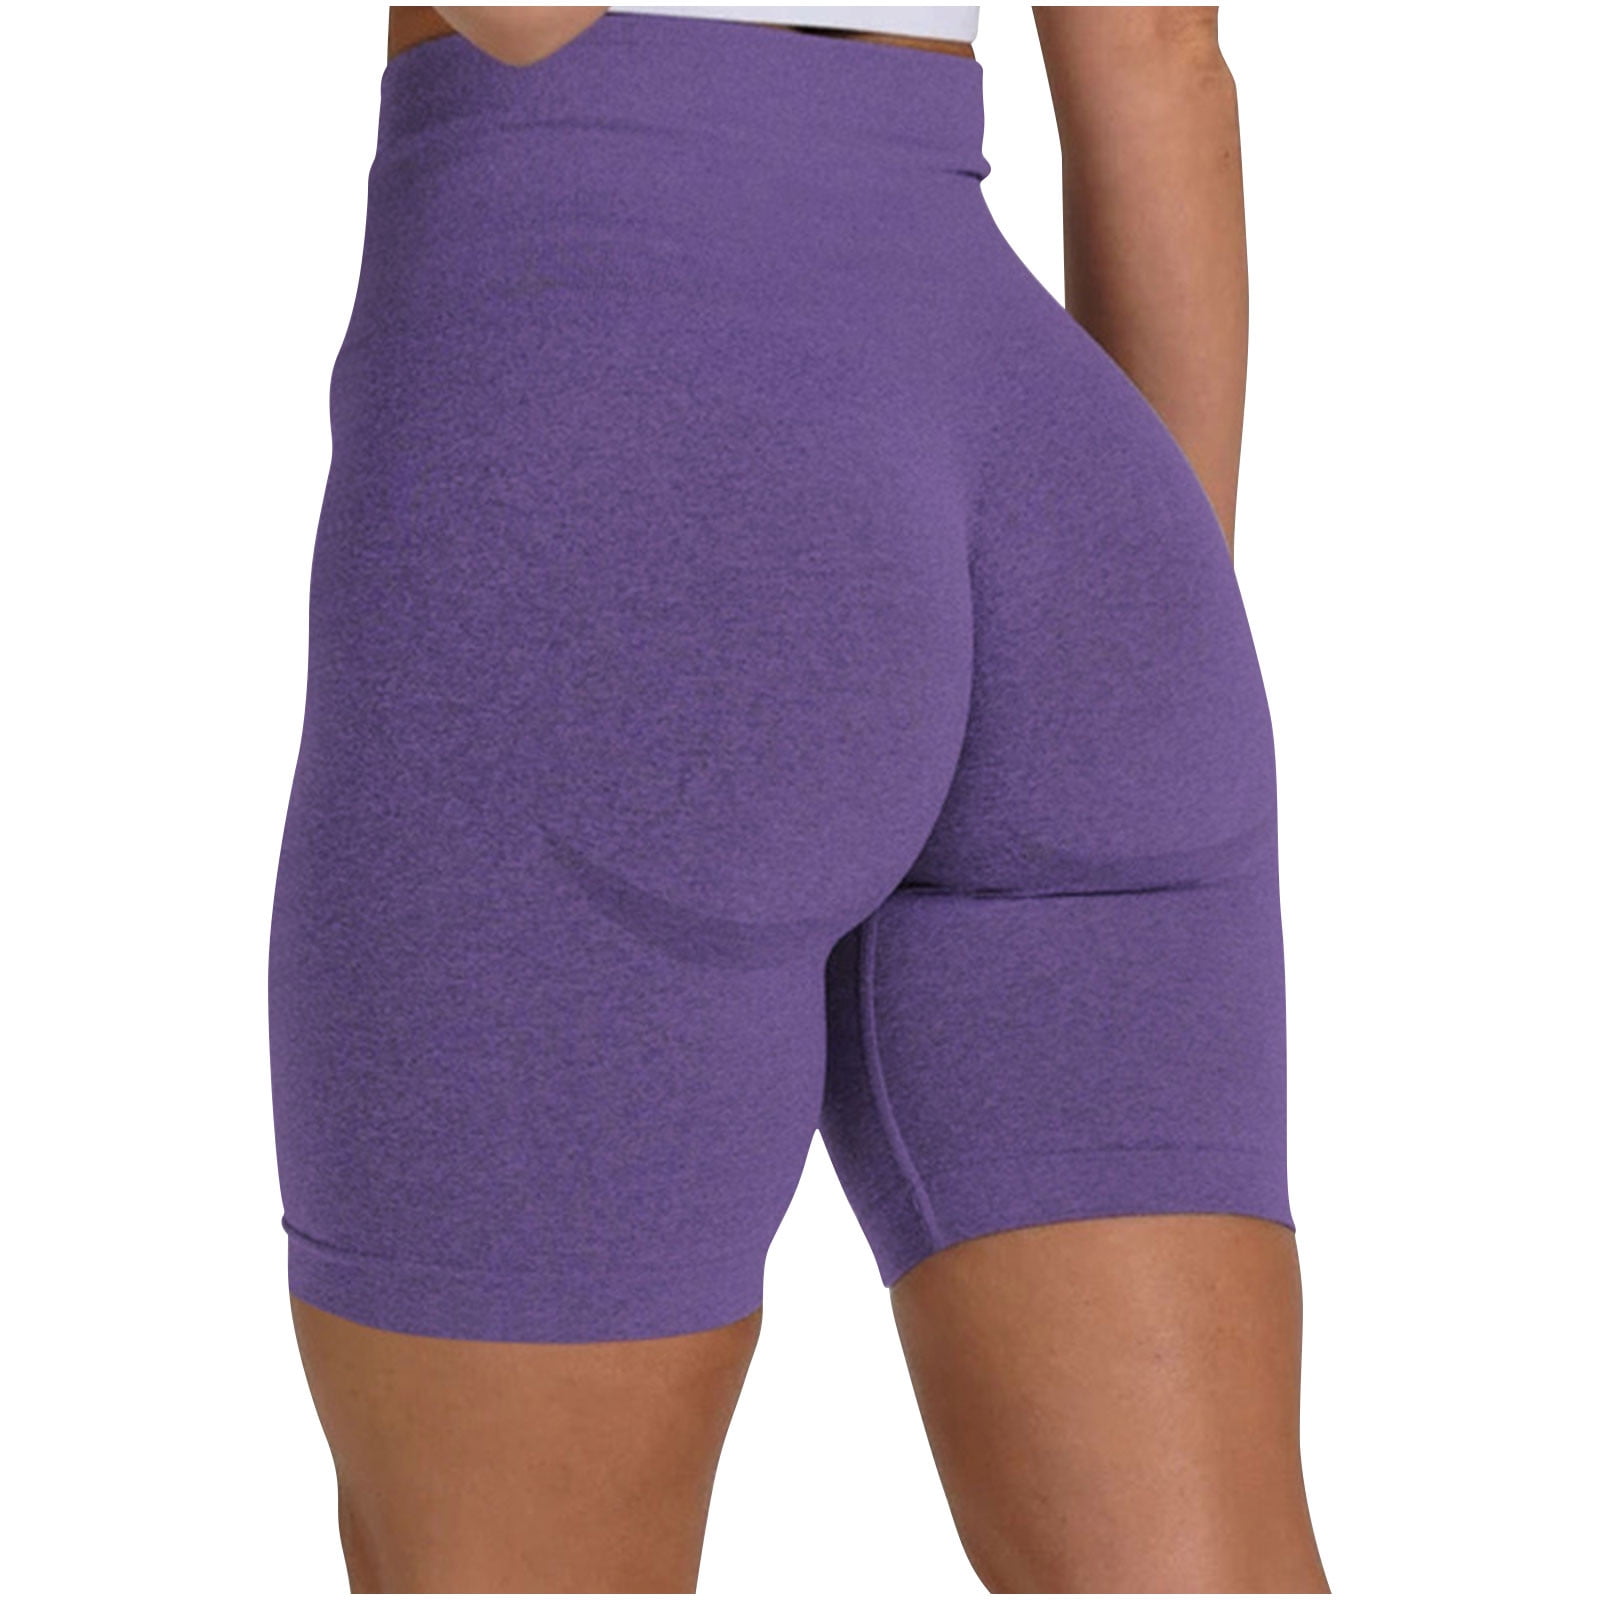 XFLWAM Scrunch Butt Lifting Workout Shorts for Women High Waisted Butt Lift  Yoga Gym Seamless Booty Shorts Purple M 